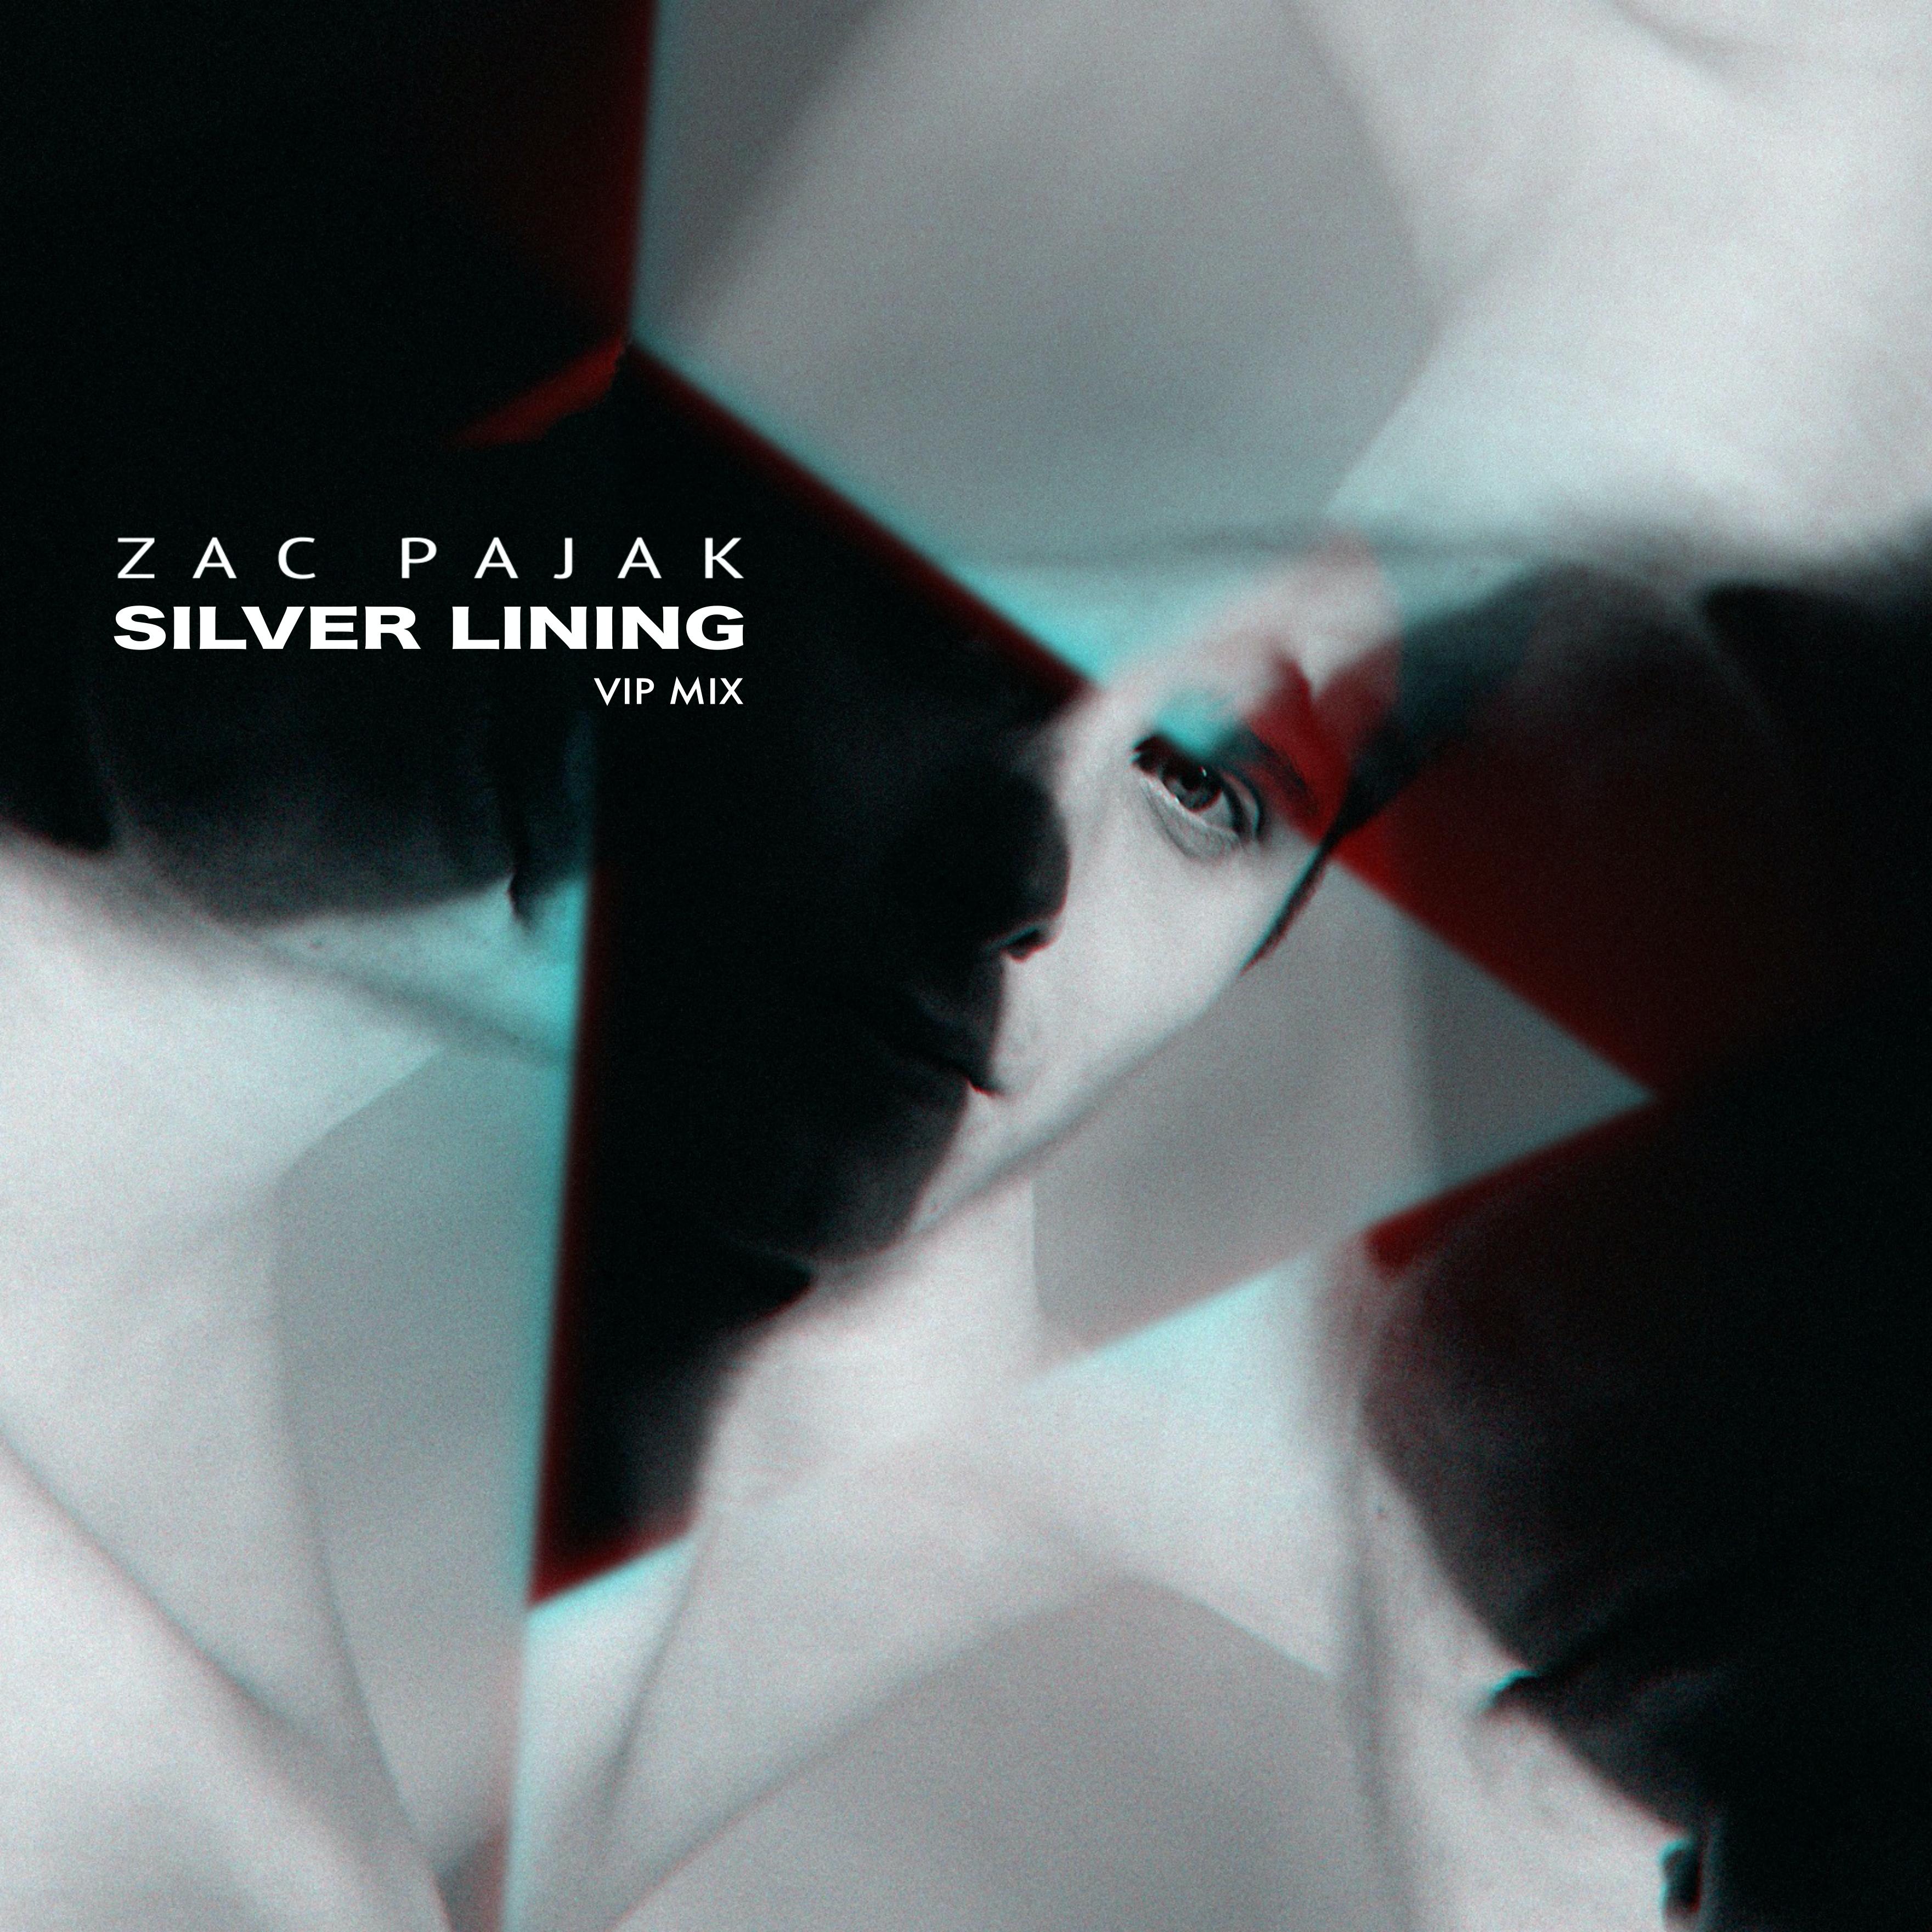 Zac Pajak - Silver Lining